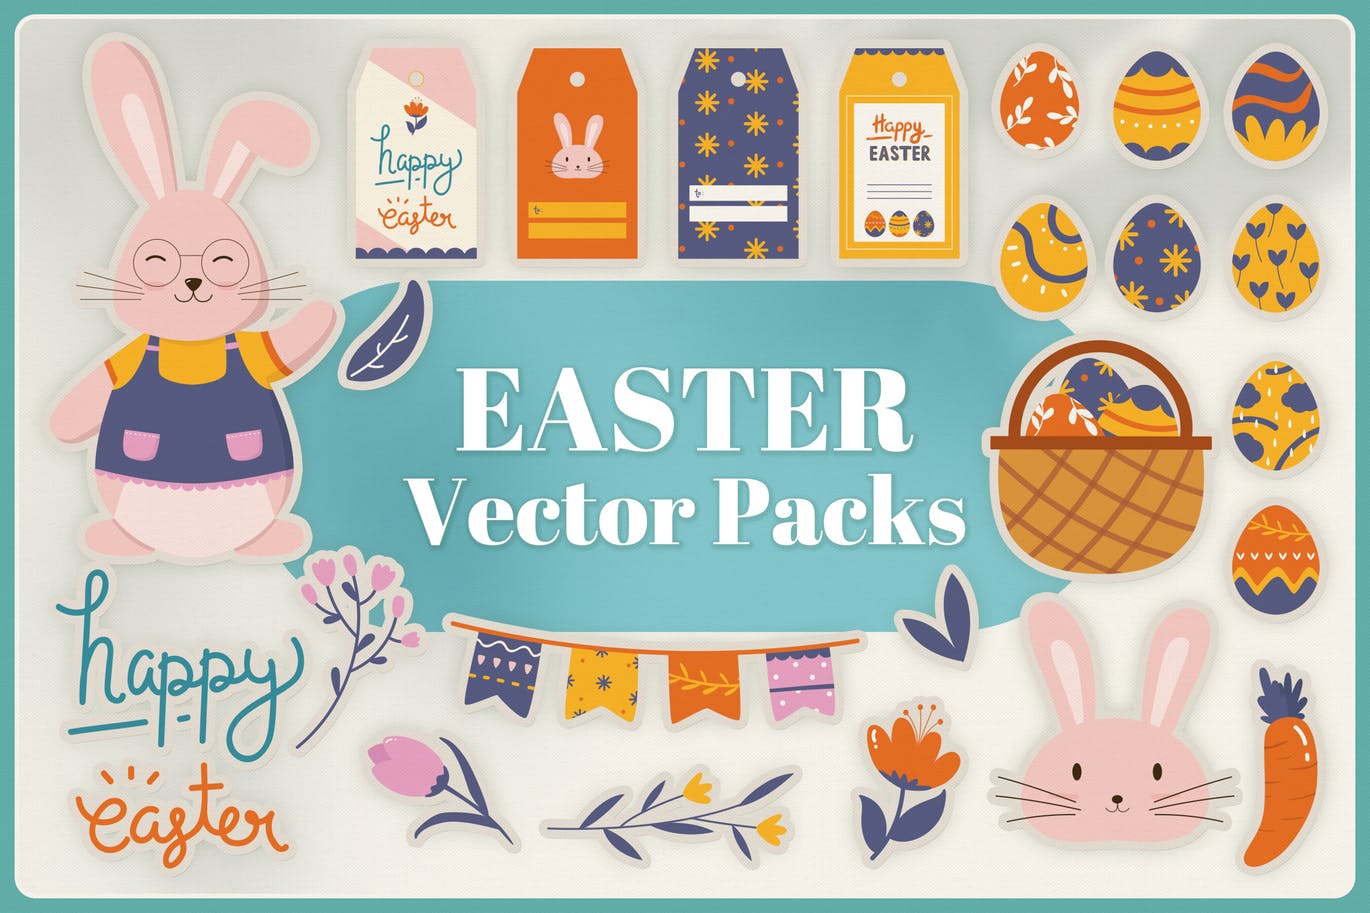 复活节节日主题元素矢量非凡图库精选设计素材 Easter Vector Pack插图